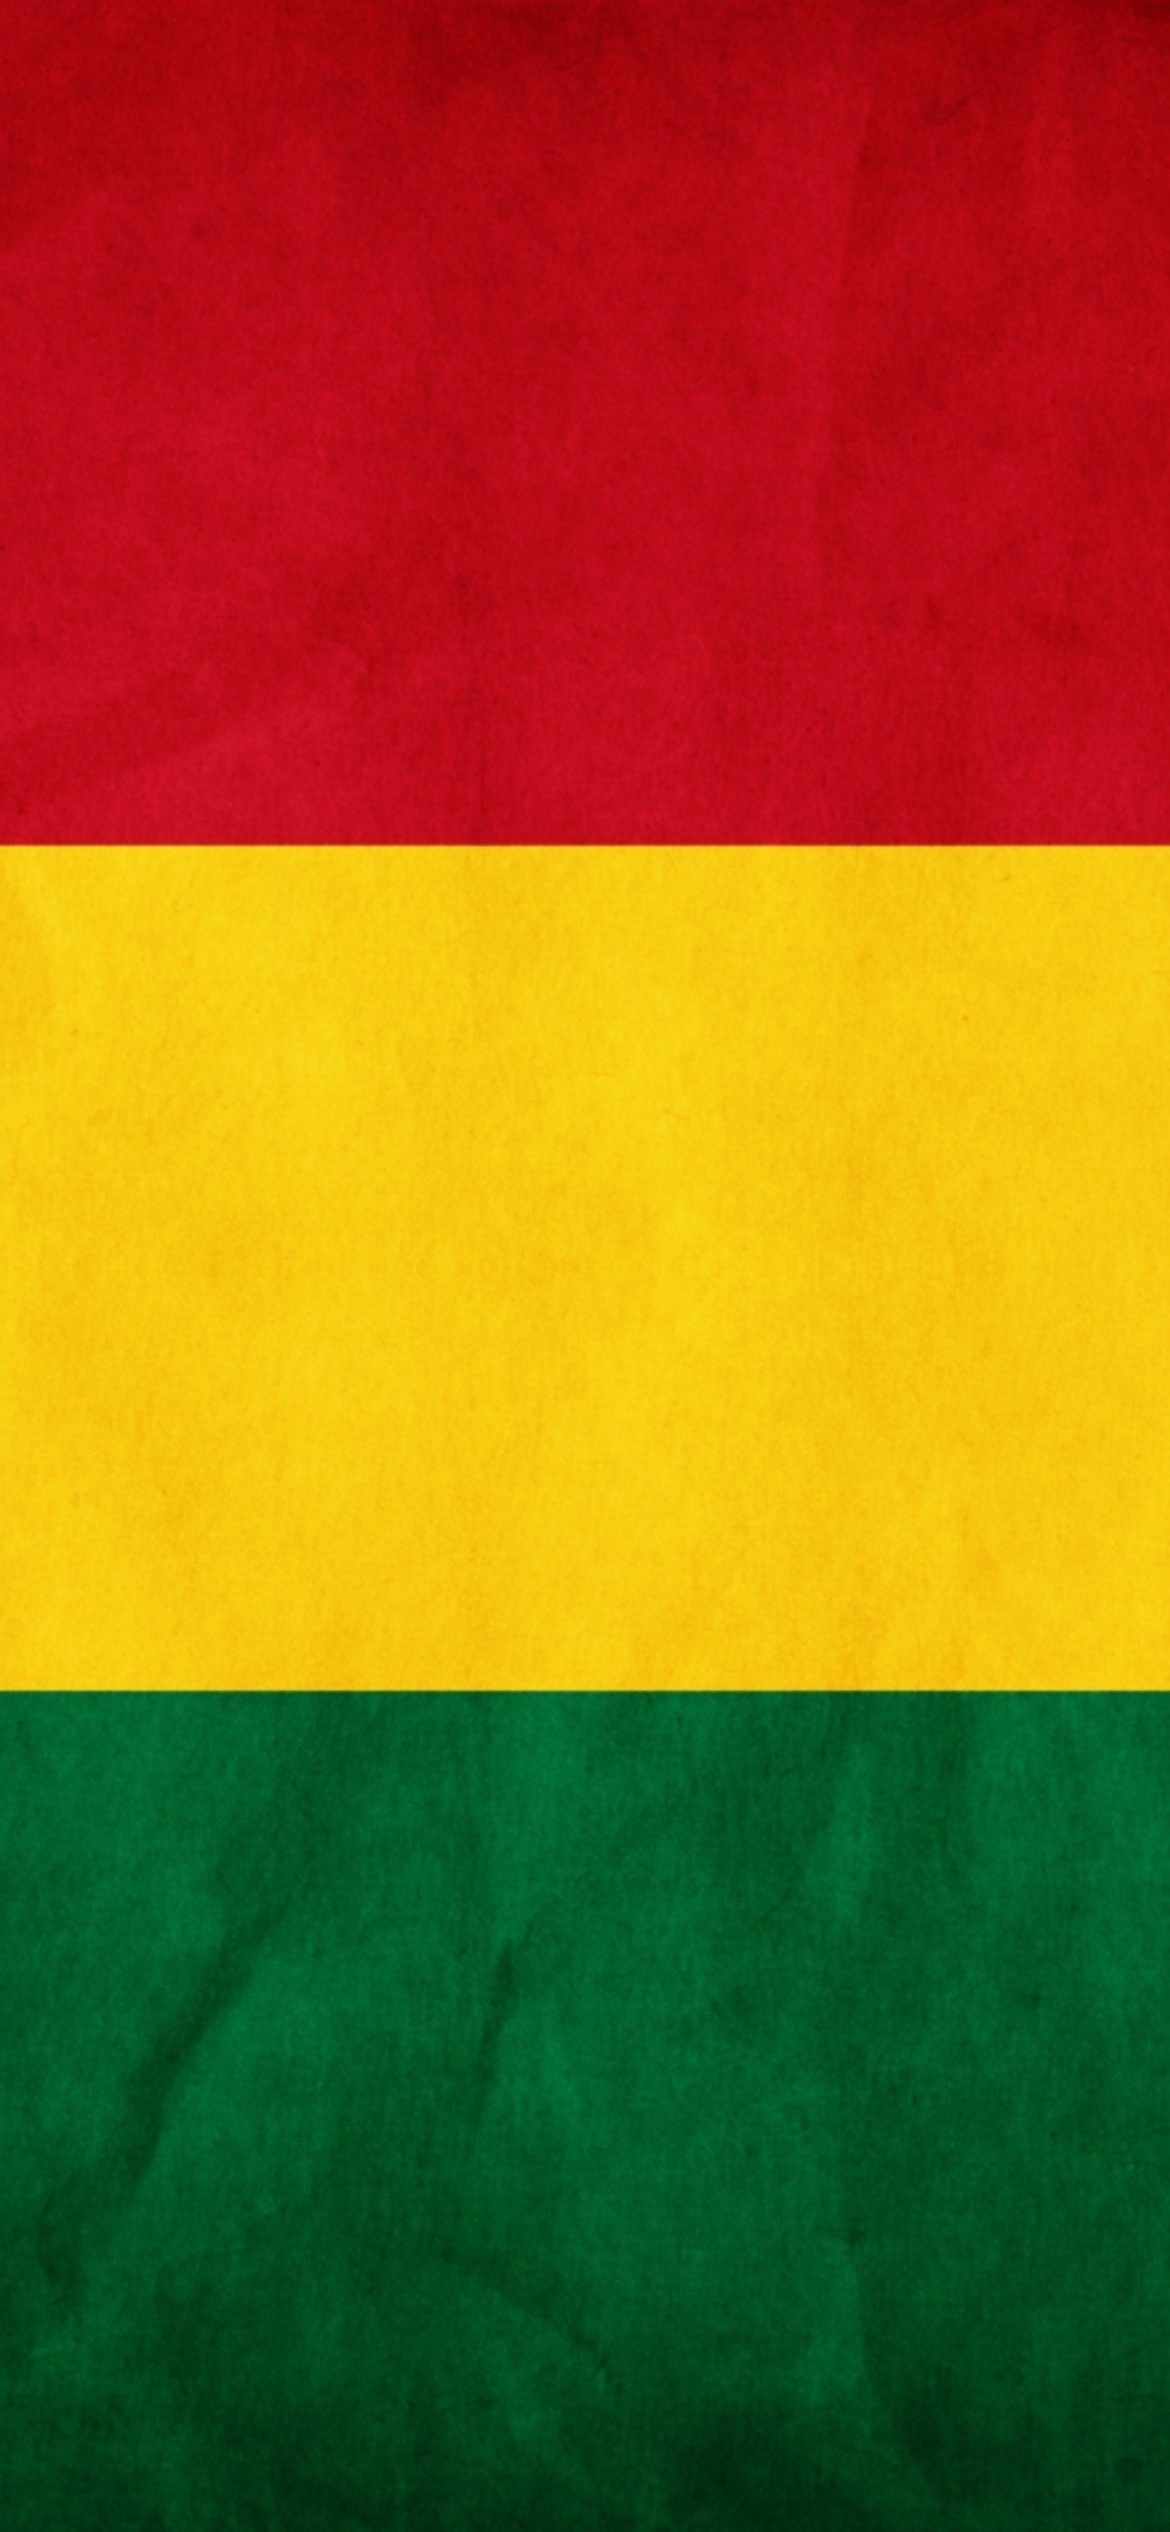 Bolivia flag wallpaper, iPhone 12 Pro, 1170x2540 HD Handy